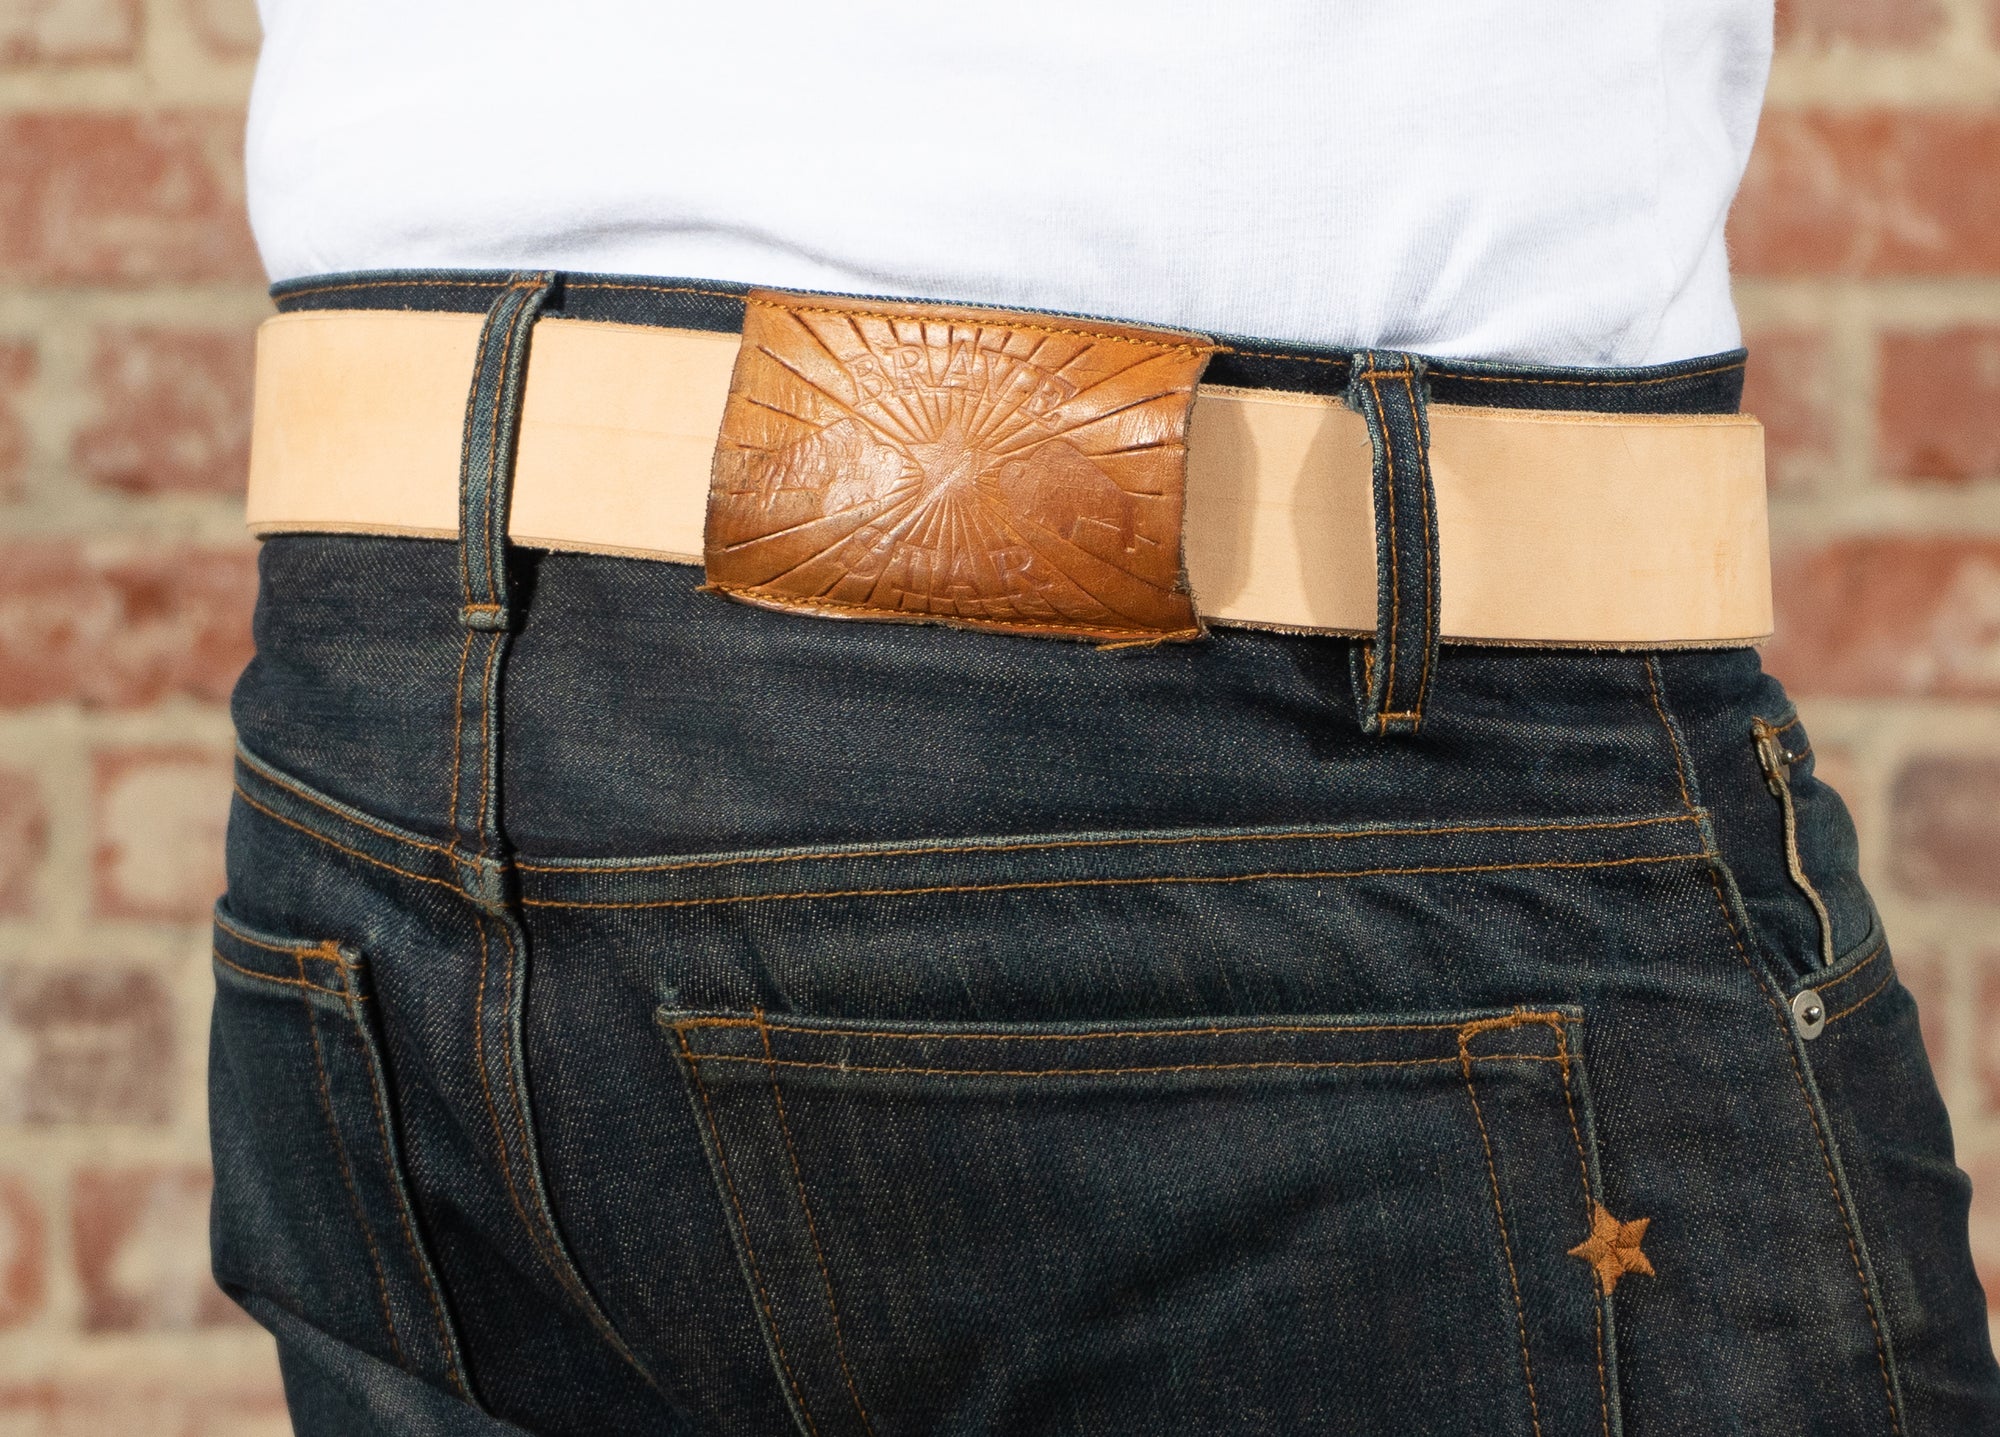 XW Leather Belt in Veg Tan (X-Wide 1.75")